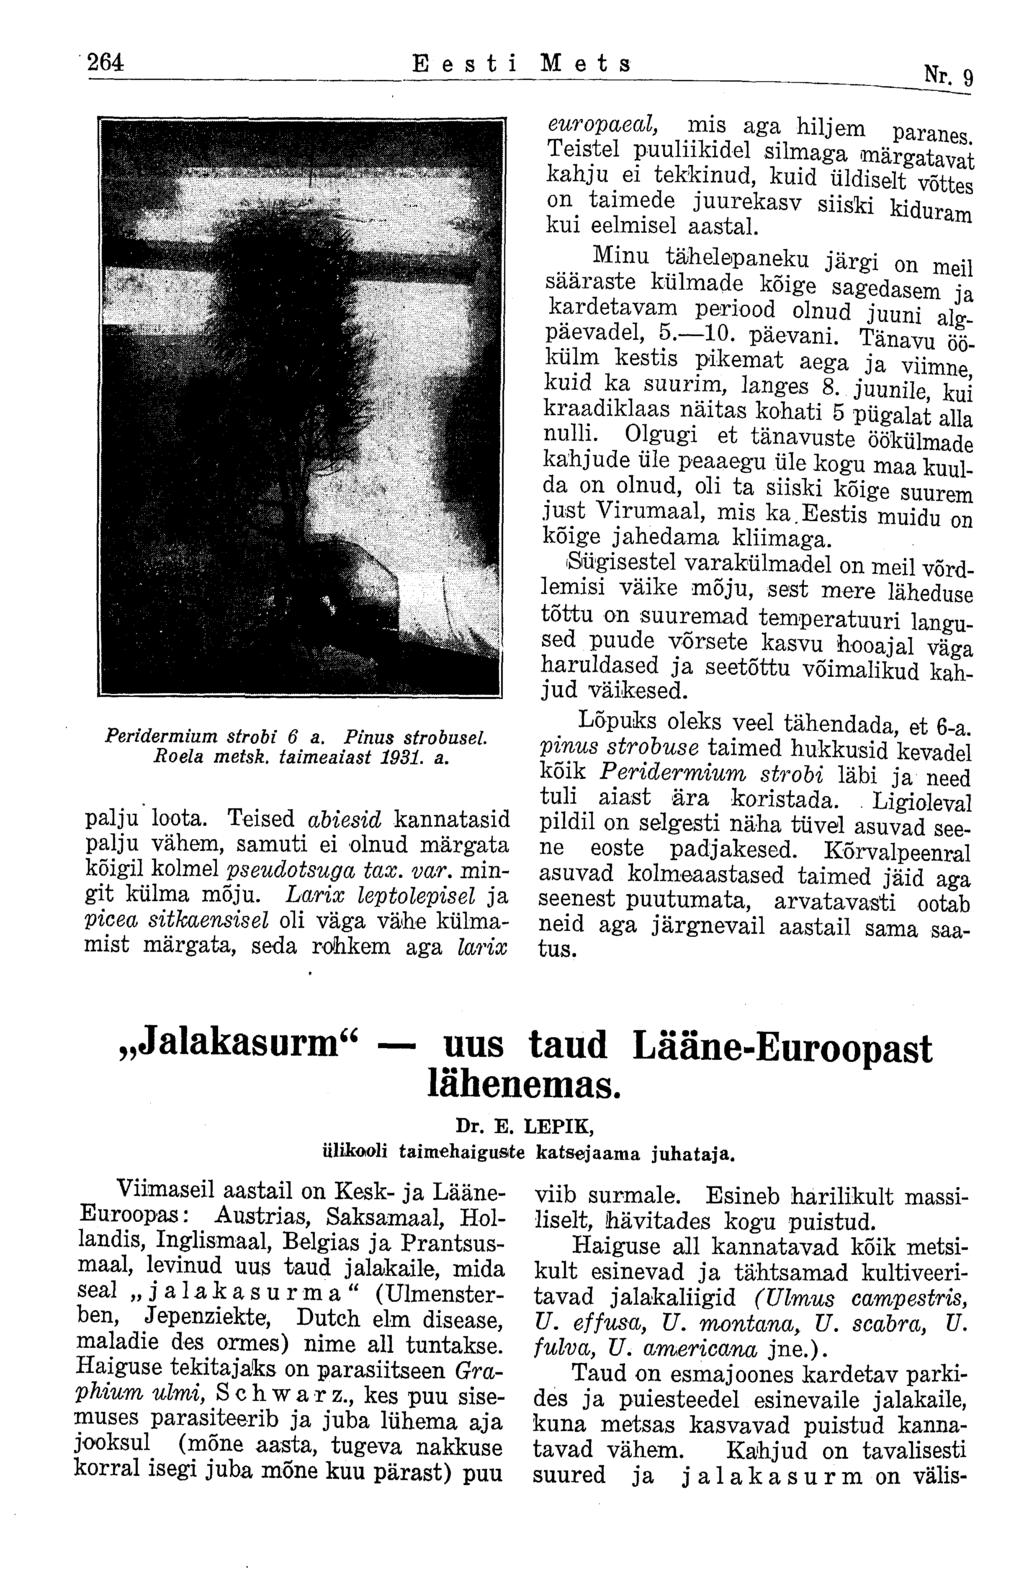 264 Eesti Mets Nr. 9 Peridermium strobi 6 a. Pinus strobusel Roela metsk. taimeaiast 1931. a. palju loota. Teised abiesid kannatasid palju vähem, samuti ei olnud märgata kõigil kolmel pseudotsuga tax.